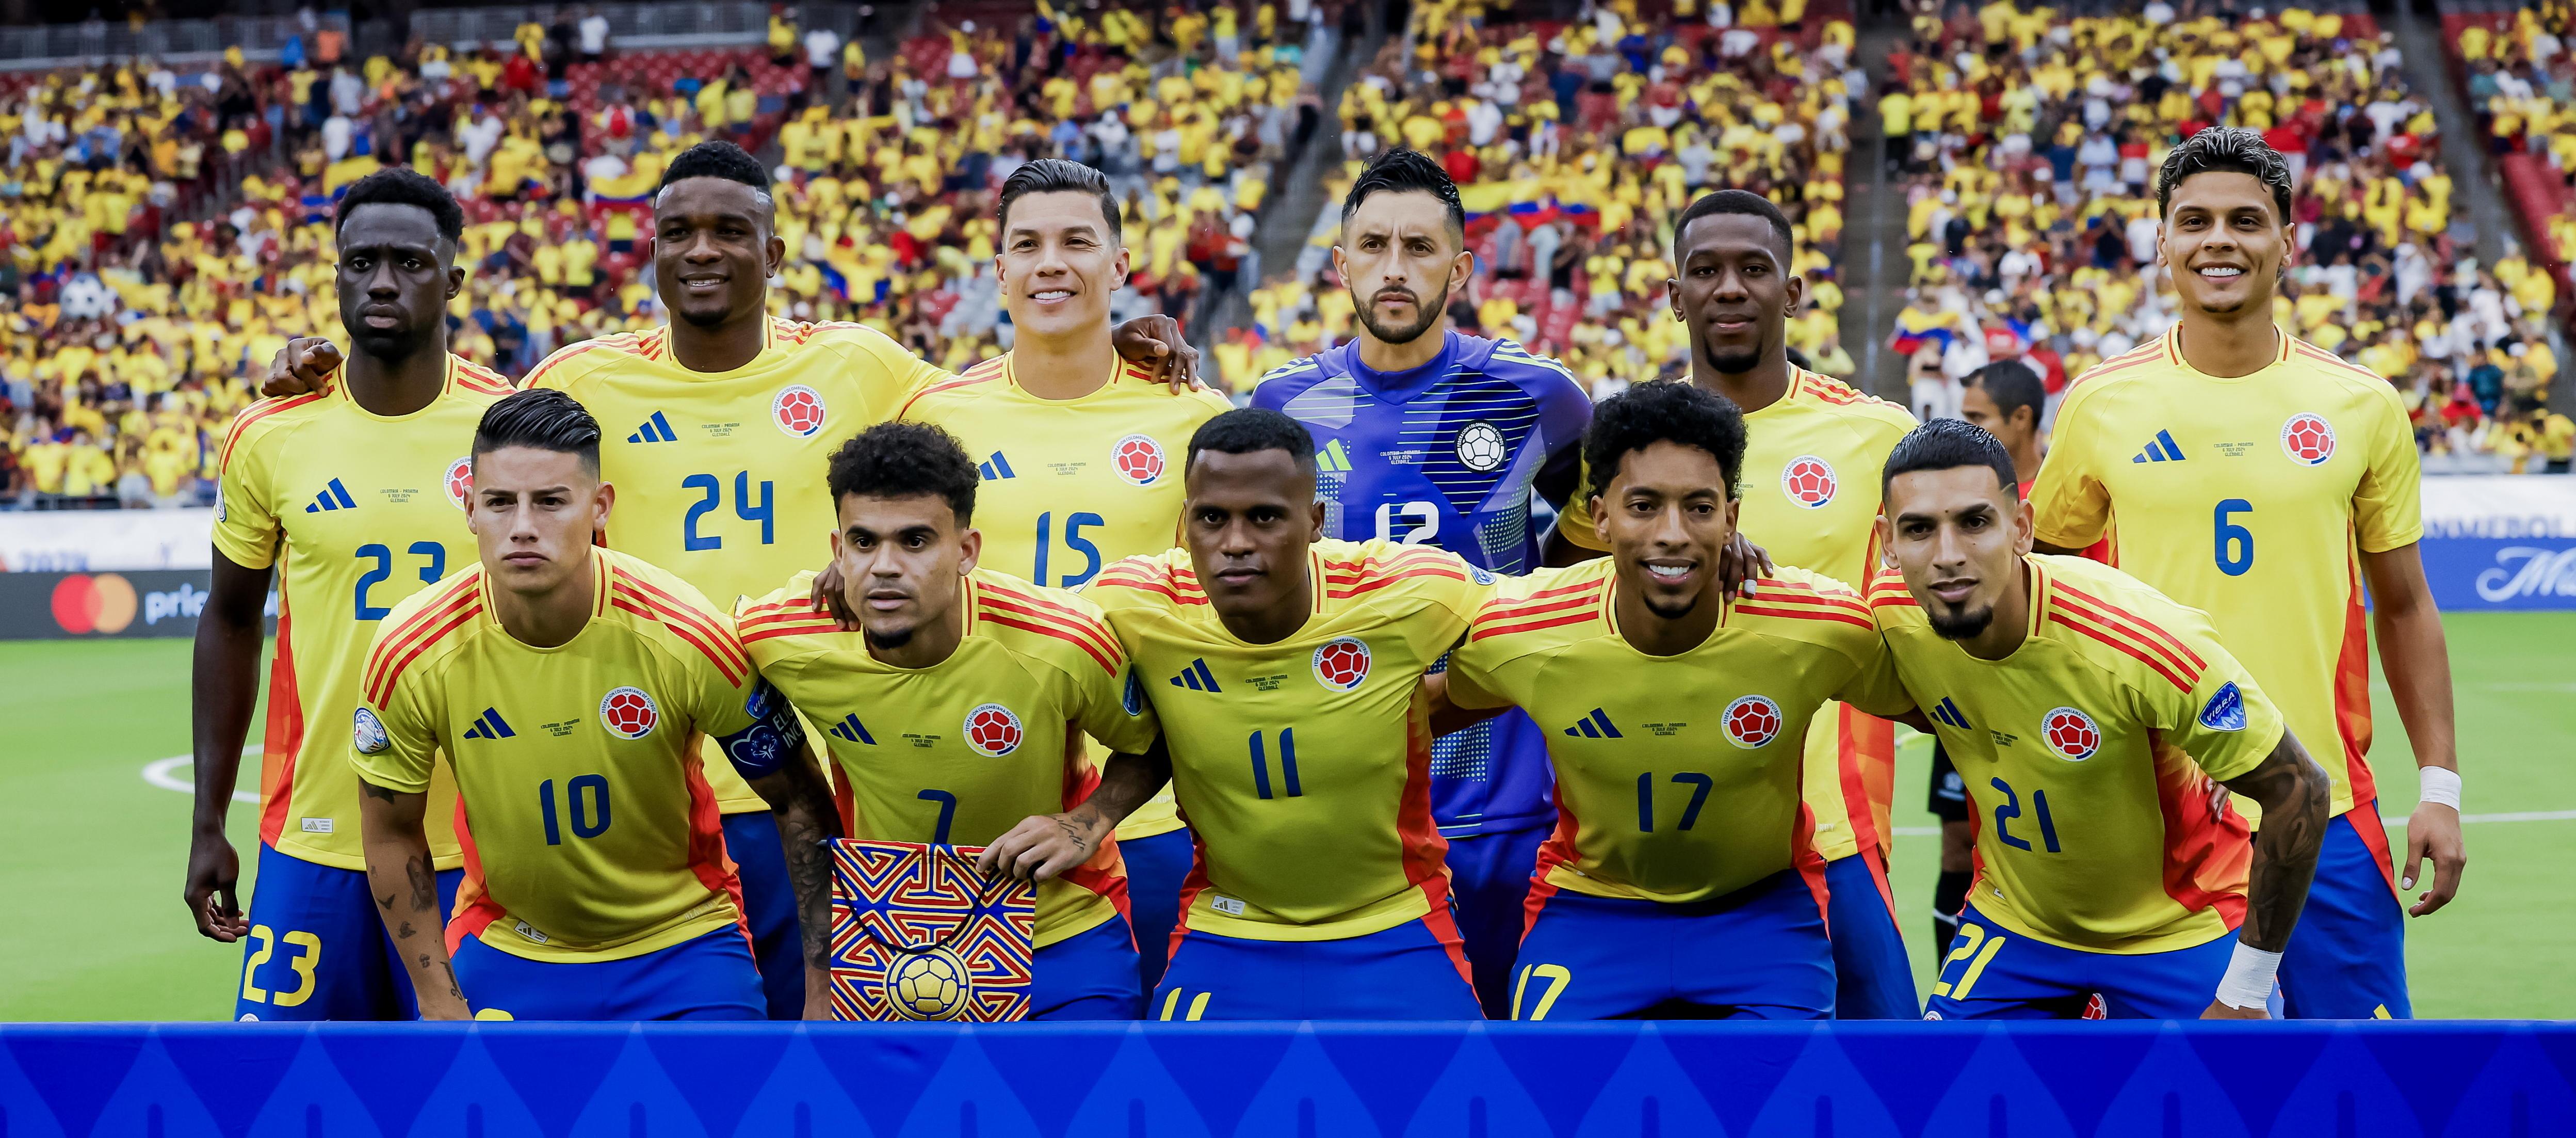 Selección Colombia que derrotó a Panamá para pasar a semifinales de la Copa América. 